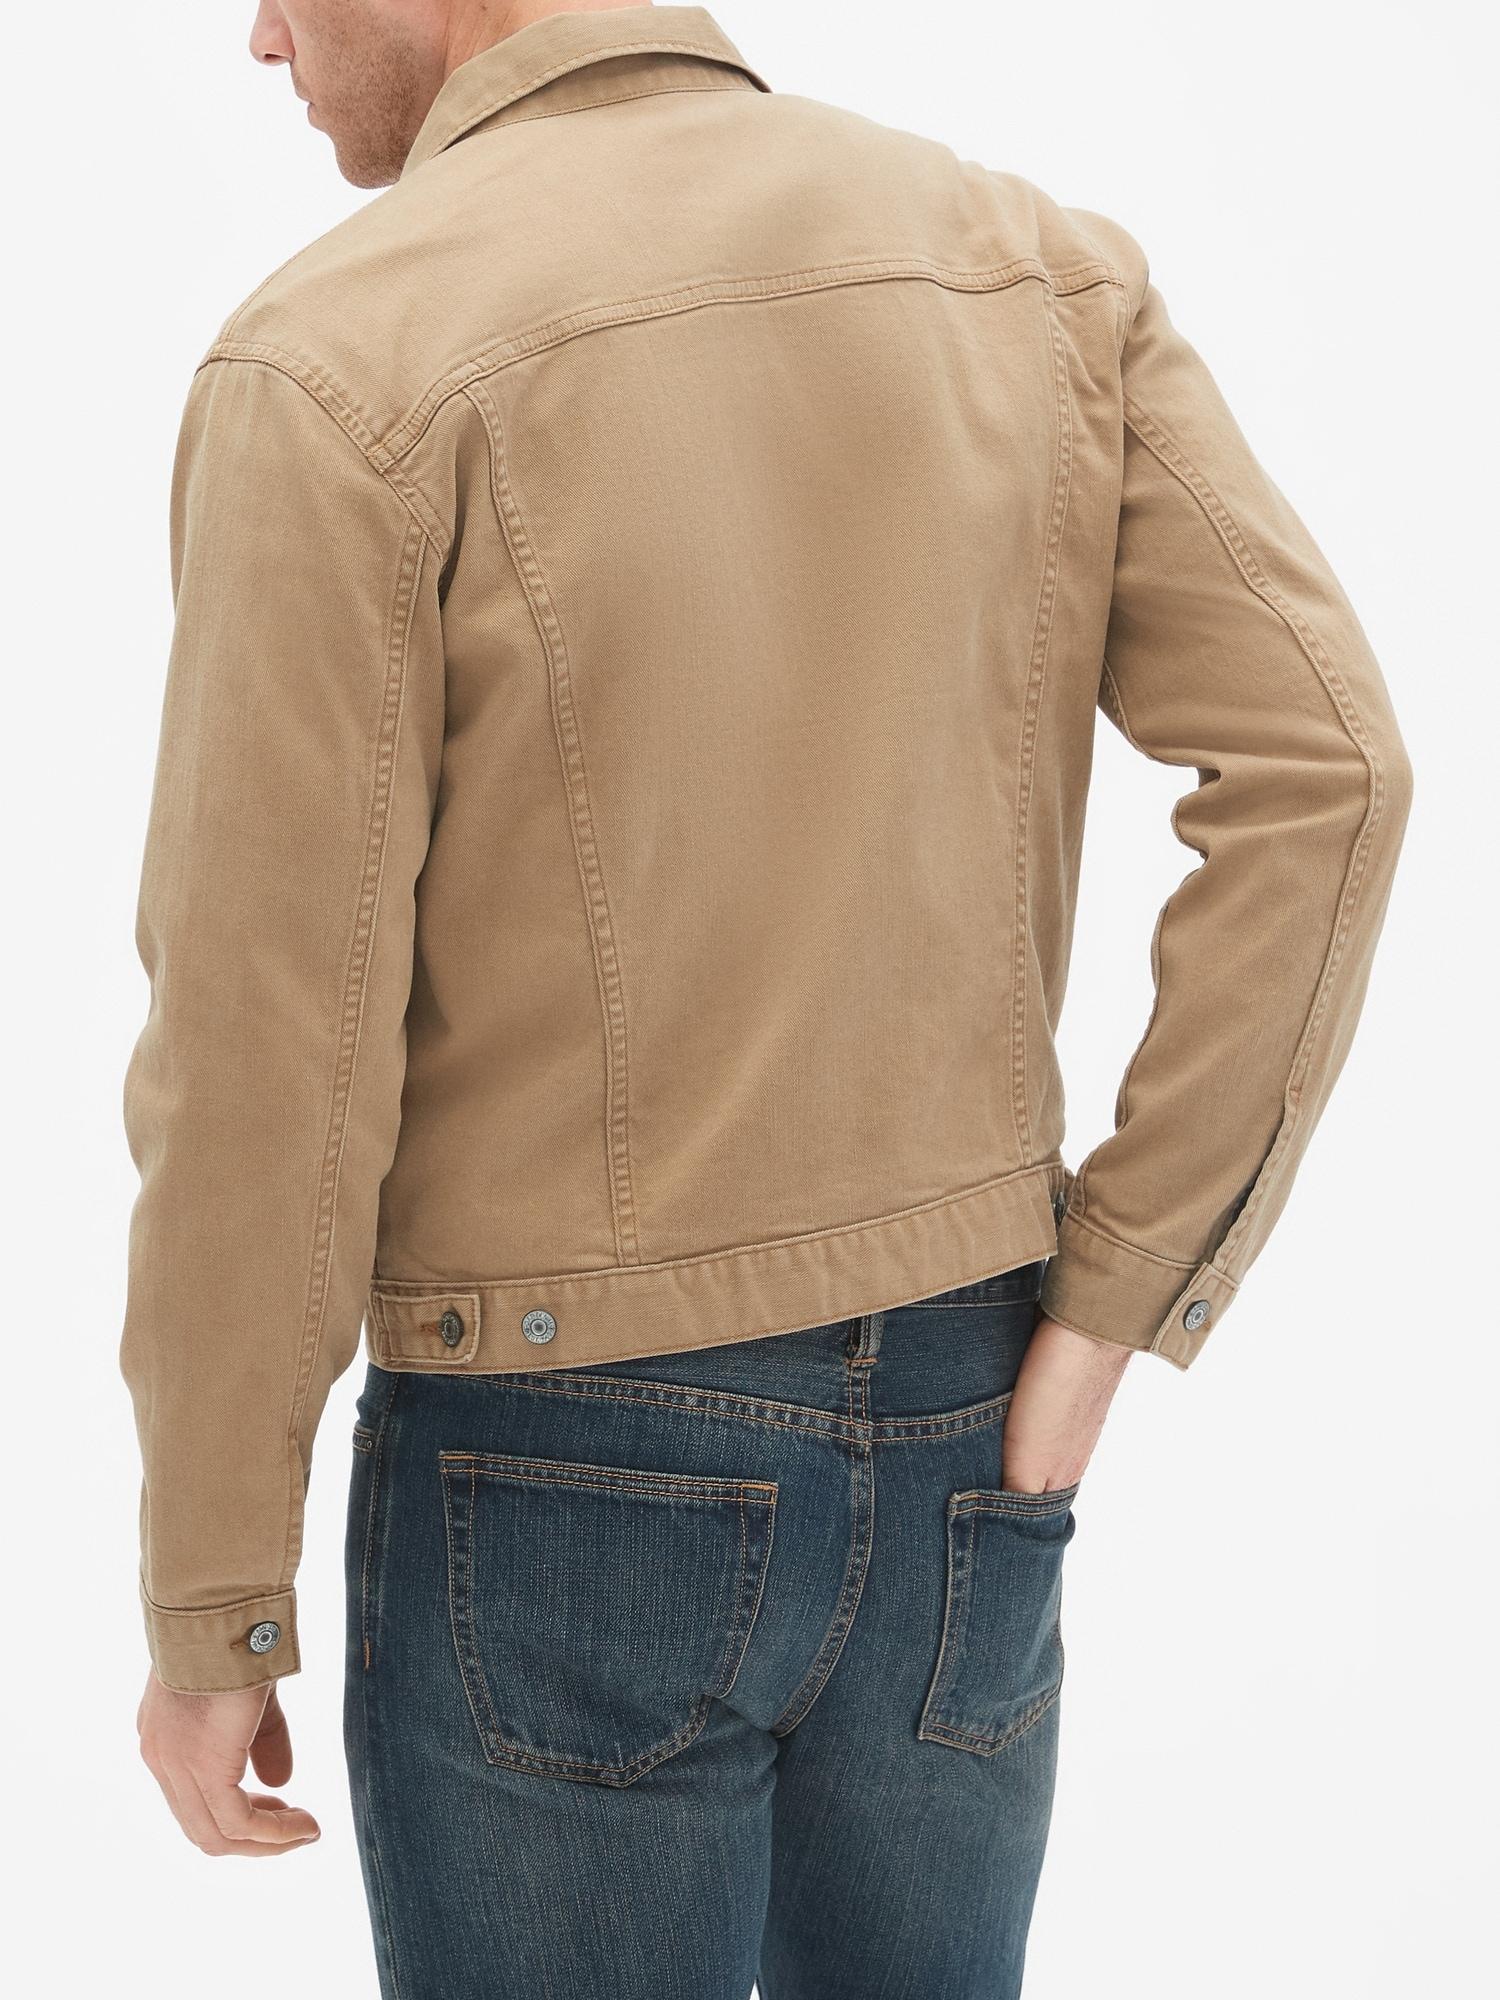 gap iconic denim jacket